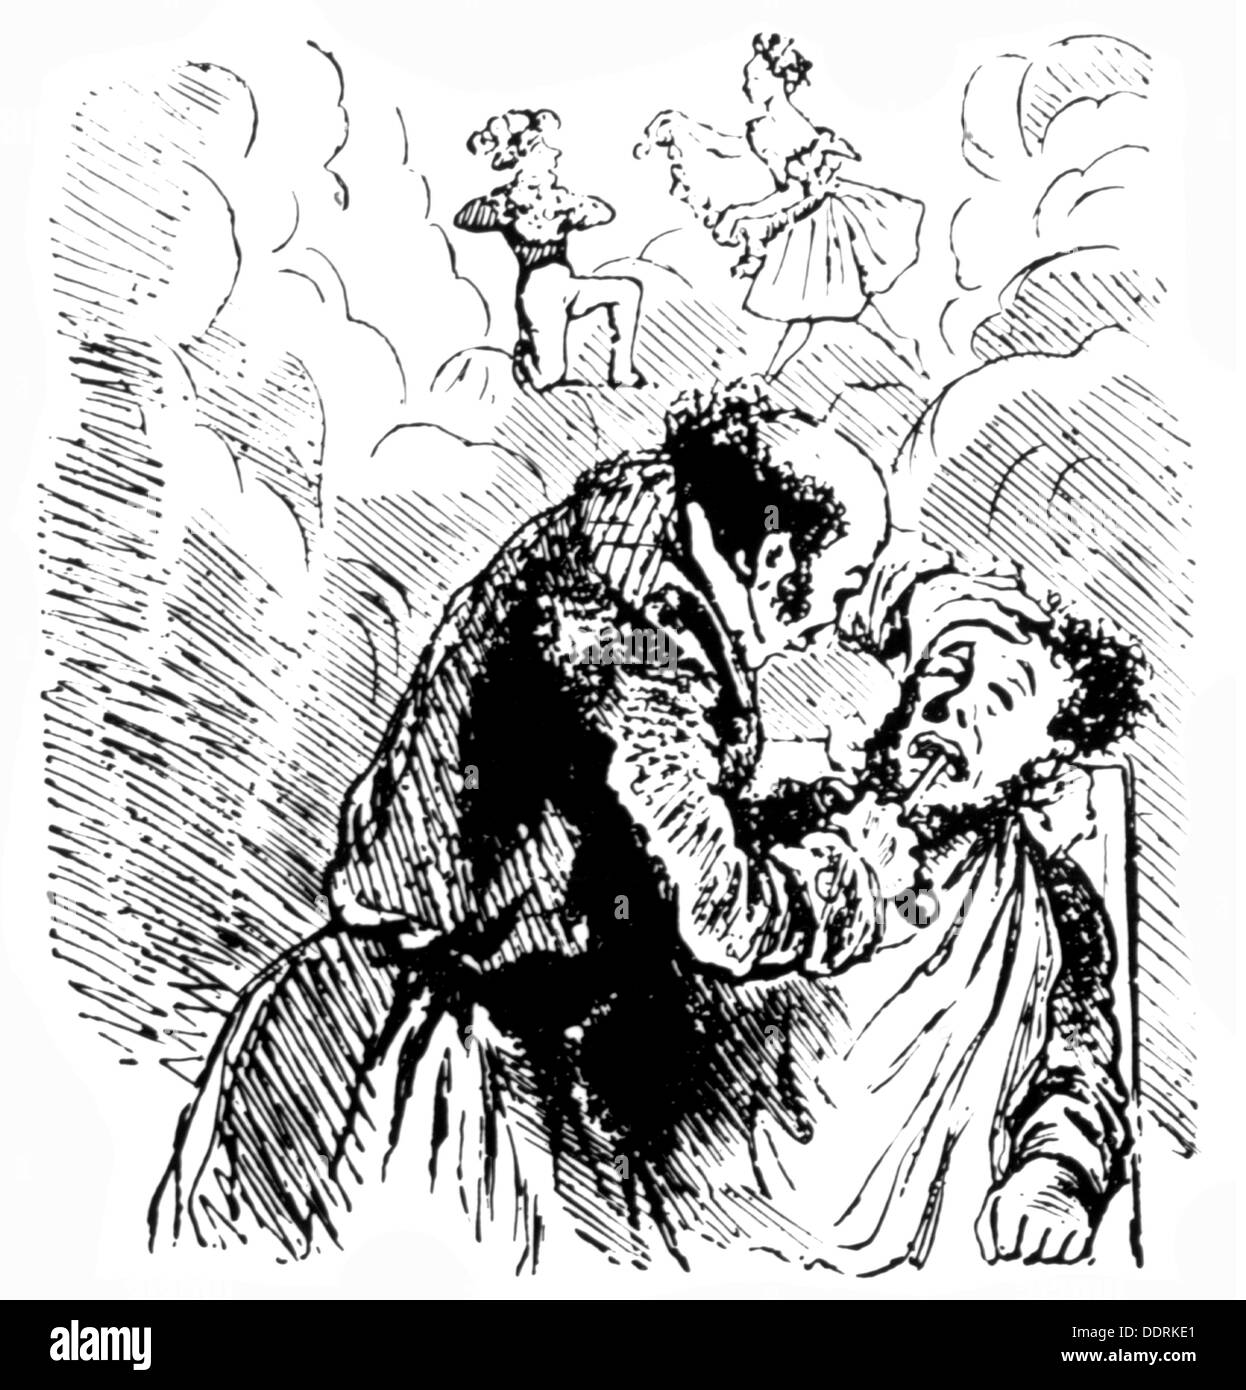 Medizin, Anästhesie, süße Träume und schmerzlose Zahnextraktion mit Äther, Lithographie von Cham (1819 - 1879), aus: 'Le Charivari', Paris 1847, Additional-Rights-Clearences-not available Stockfoto